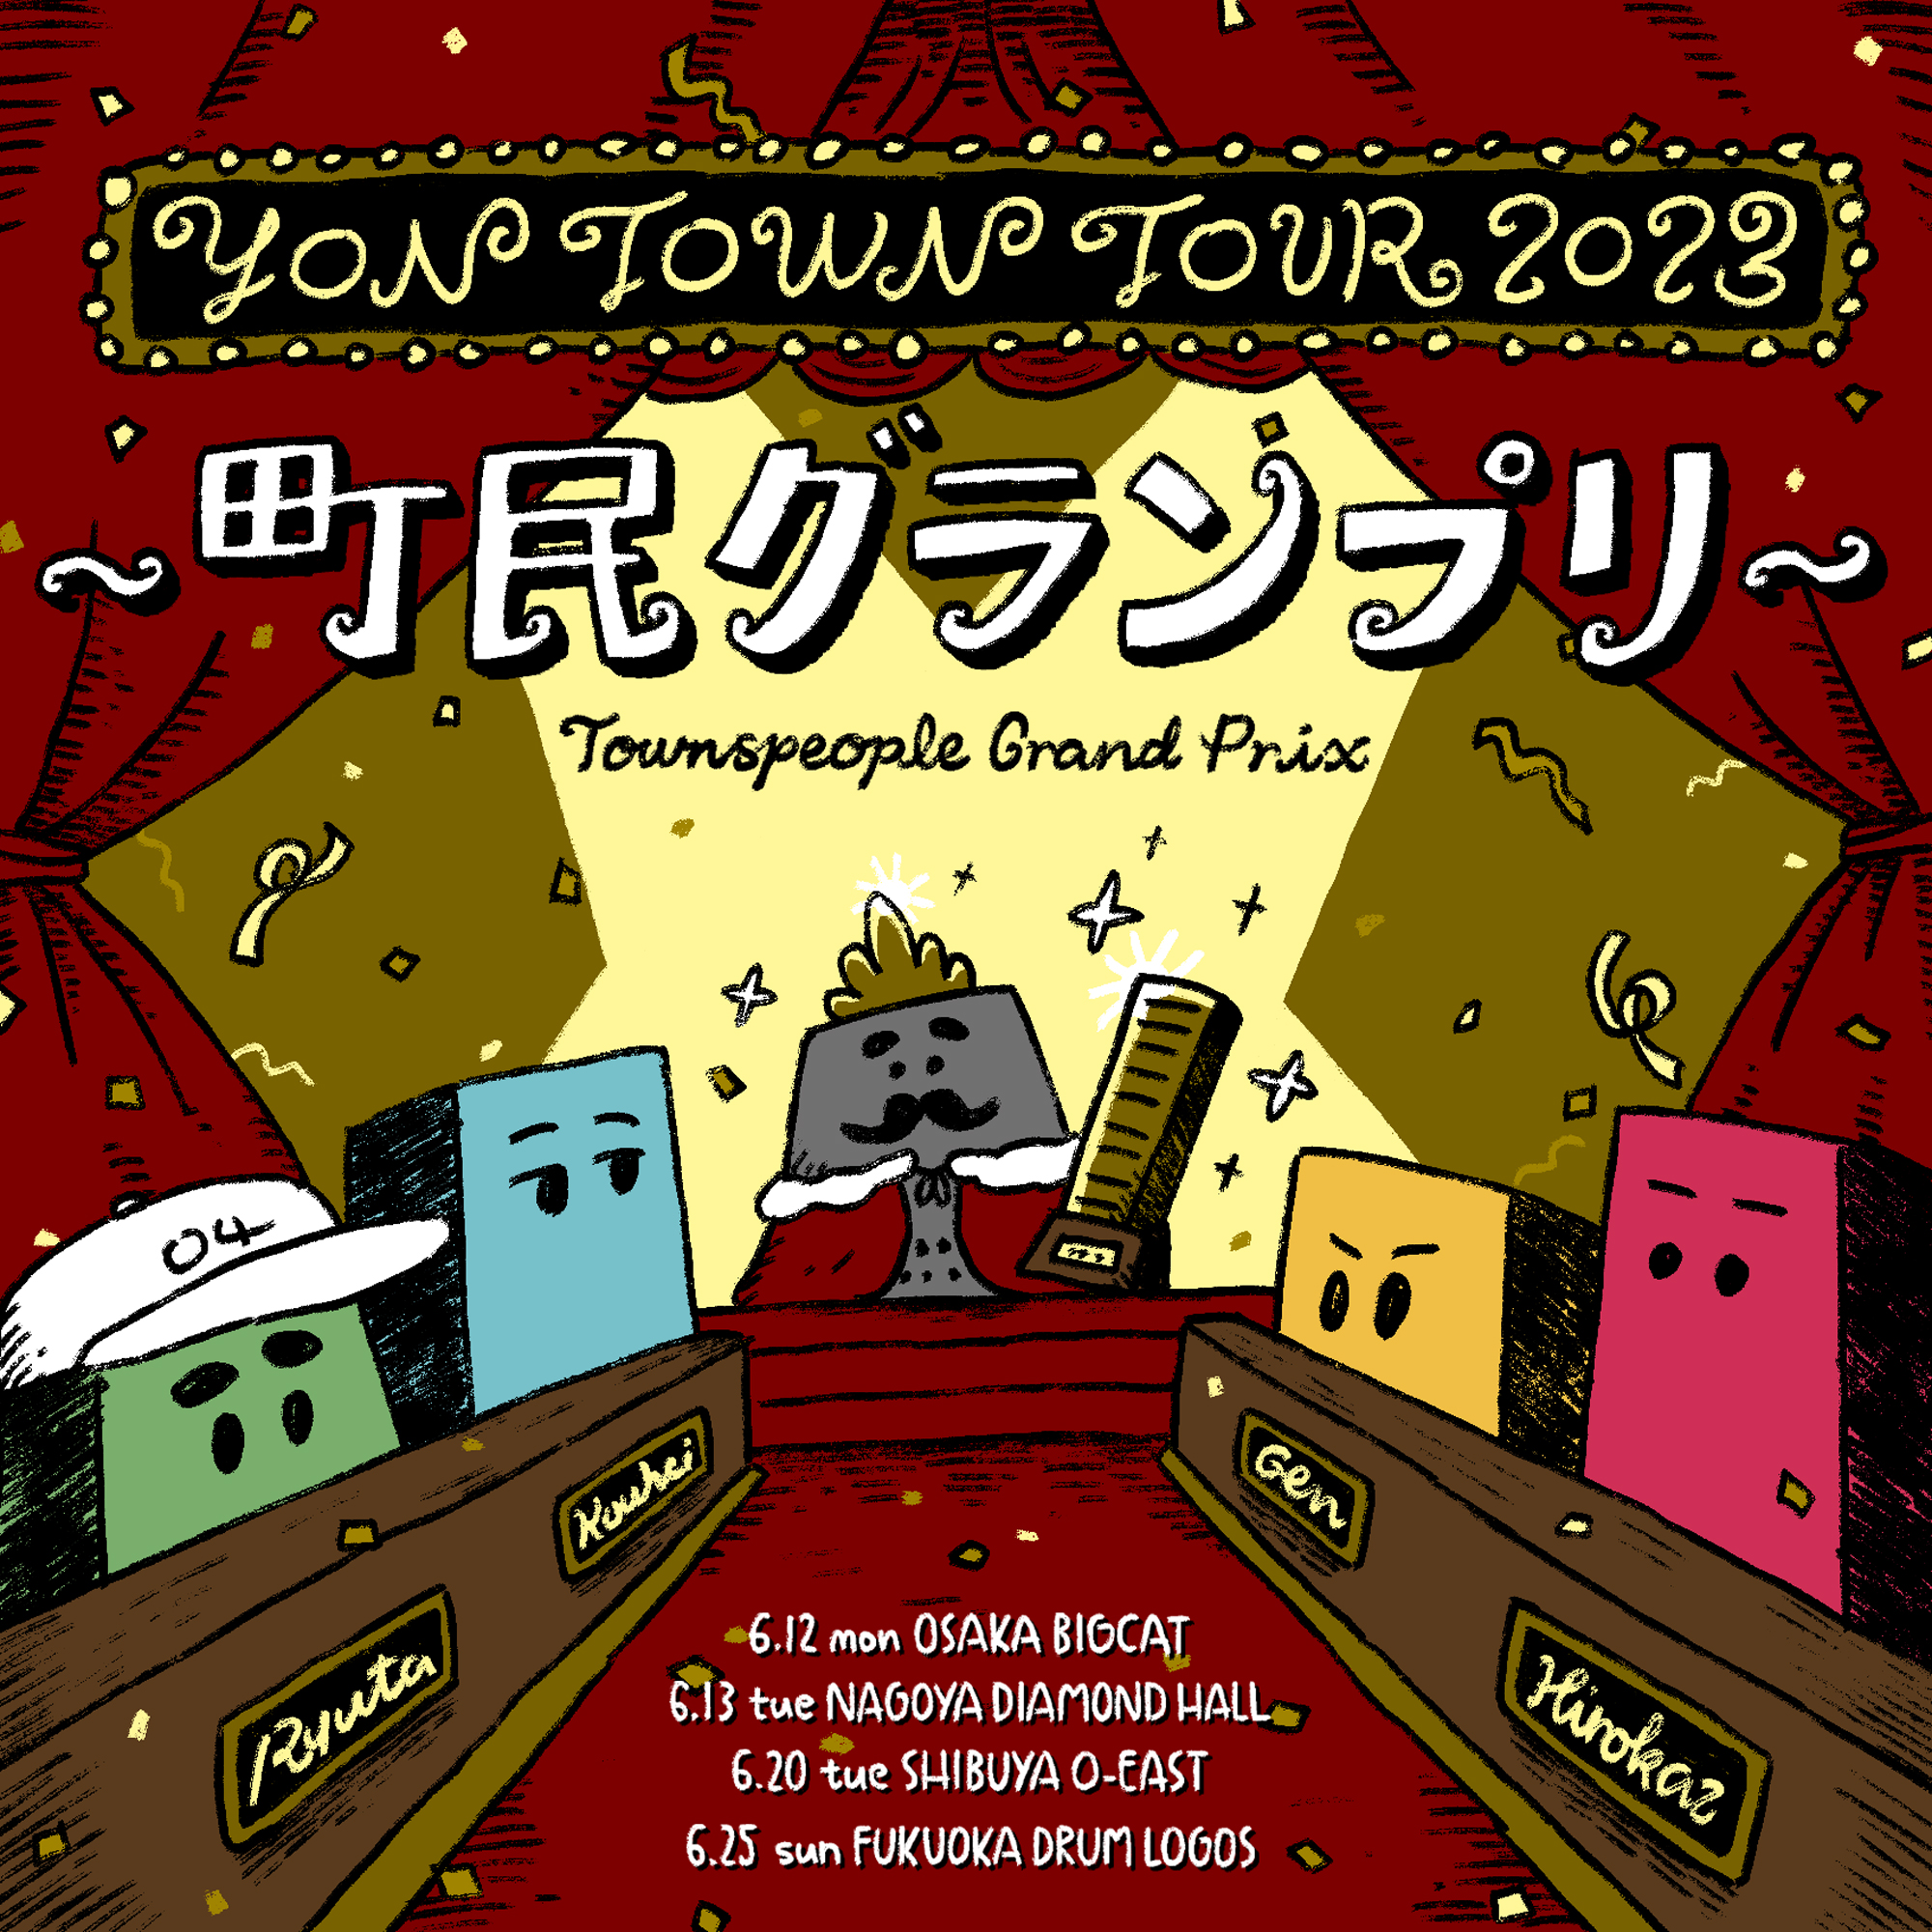 【愛知】YON TOWN tour 2023 〜町民グランプリ〜 (名古屋DIAMOND HALL) ※ONE MAN